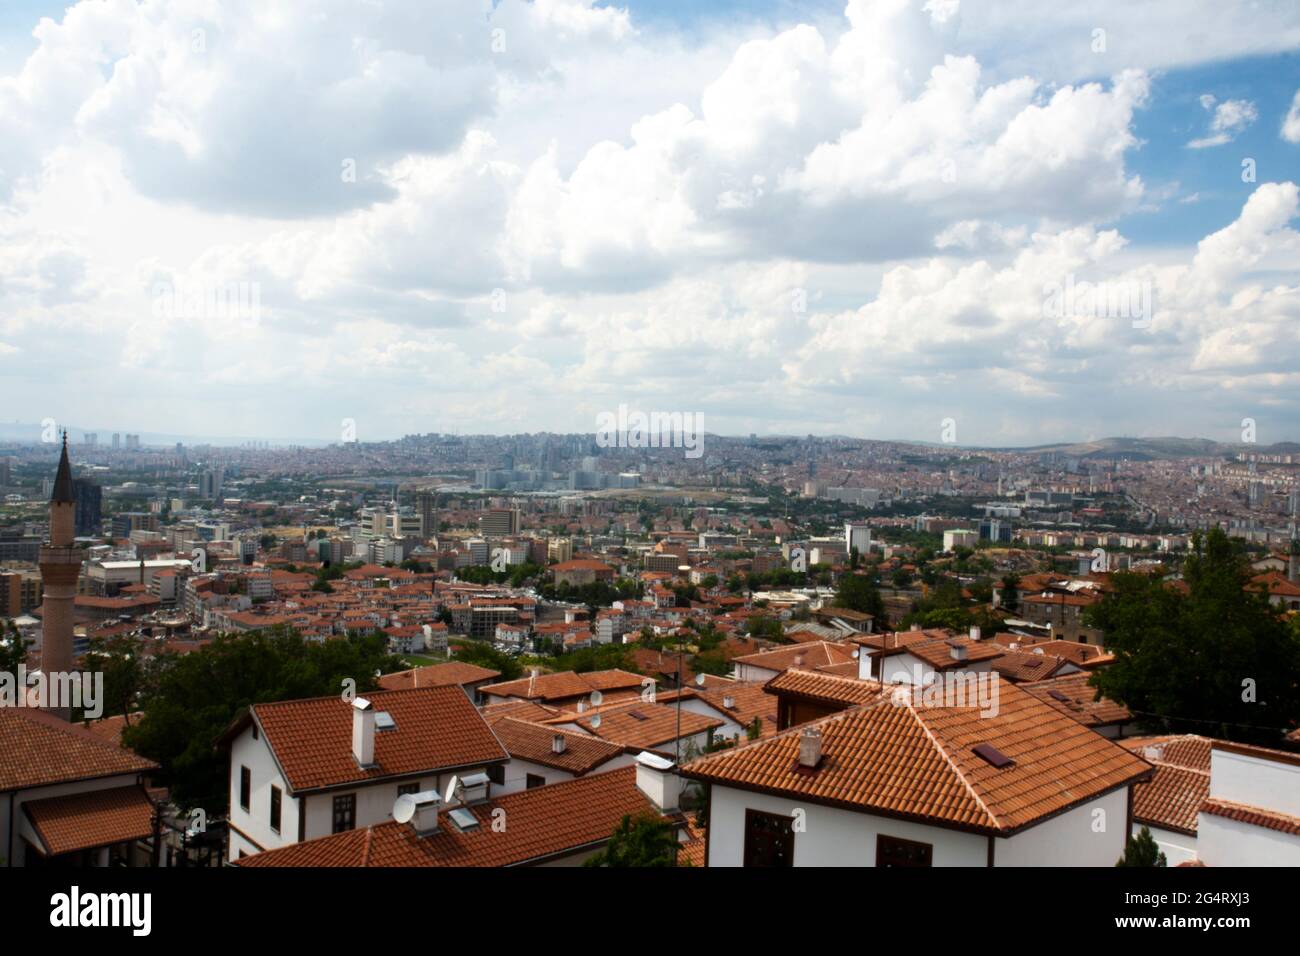 City view from Ankara Castle. Stock Photo